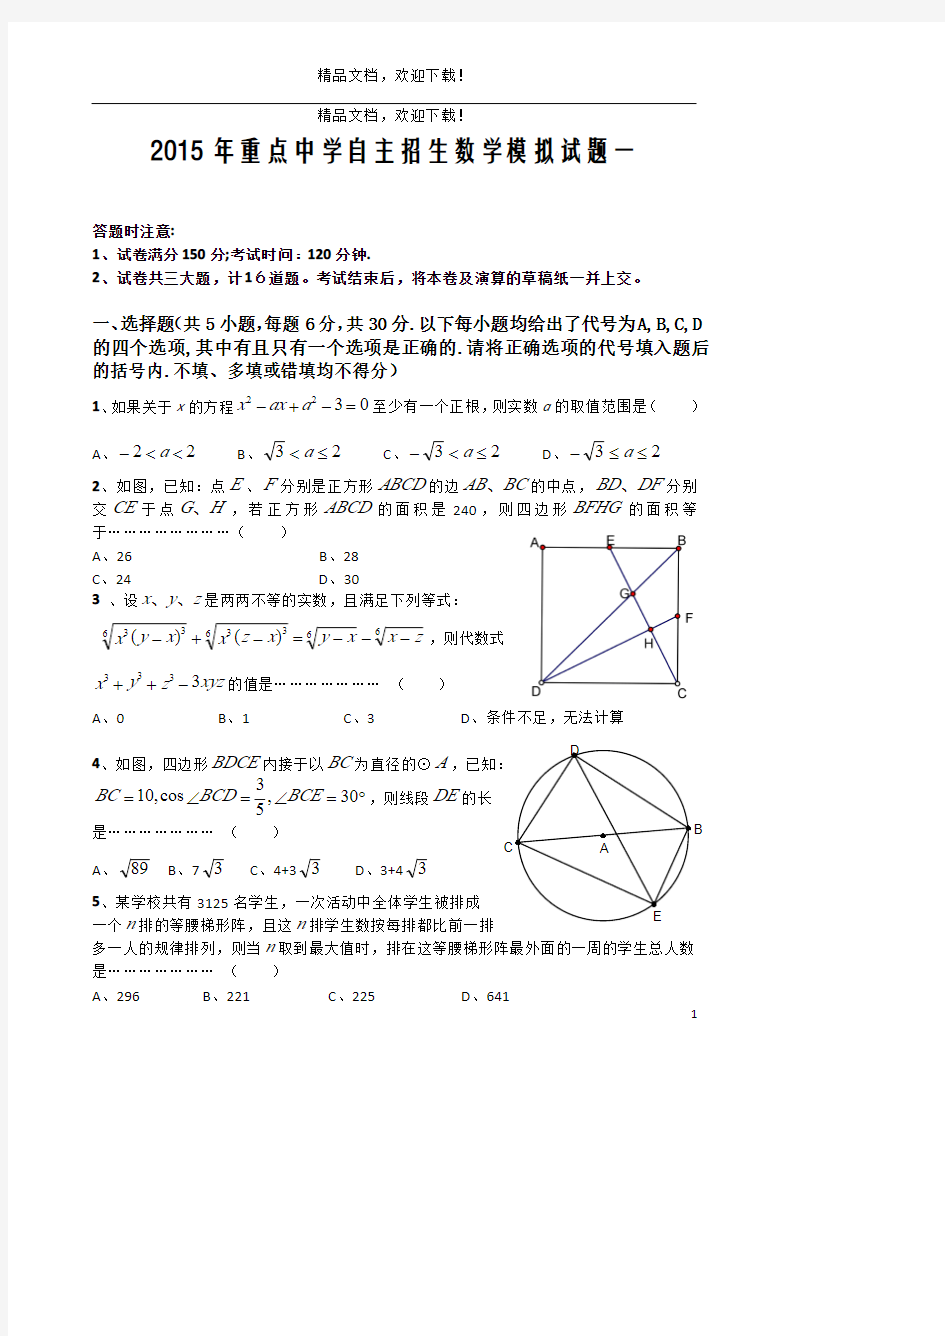 (高清打印版)2015年重点高中自主招生数学模拟试题(含答案)